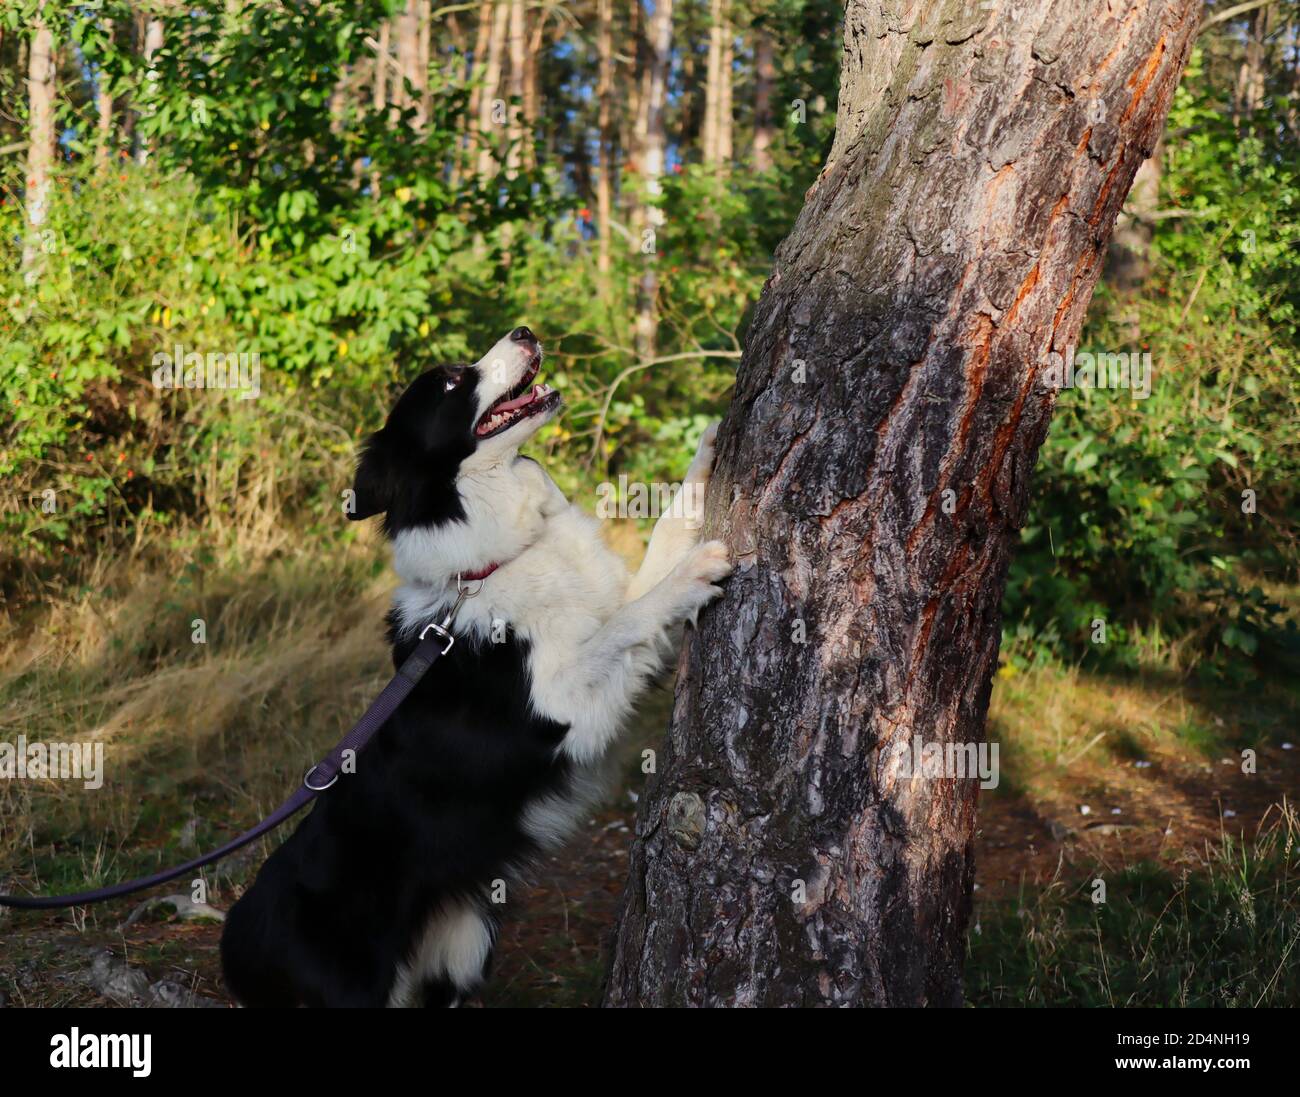 Lustige Border Collie mit Crazy Look springt mit seinem Pfote auf Baumstamm während des sonnigen Herbsttages. Liebenswert schwarz und weiß Hund im Wald. Stockfoto